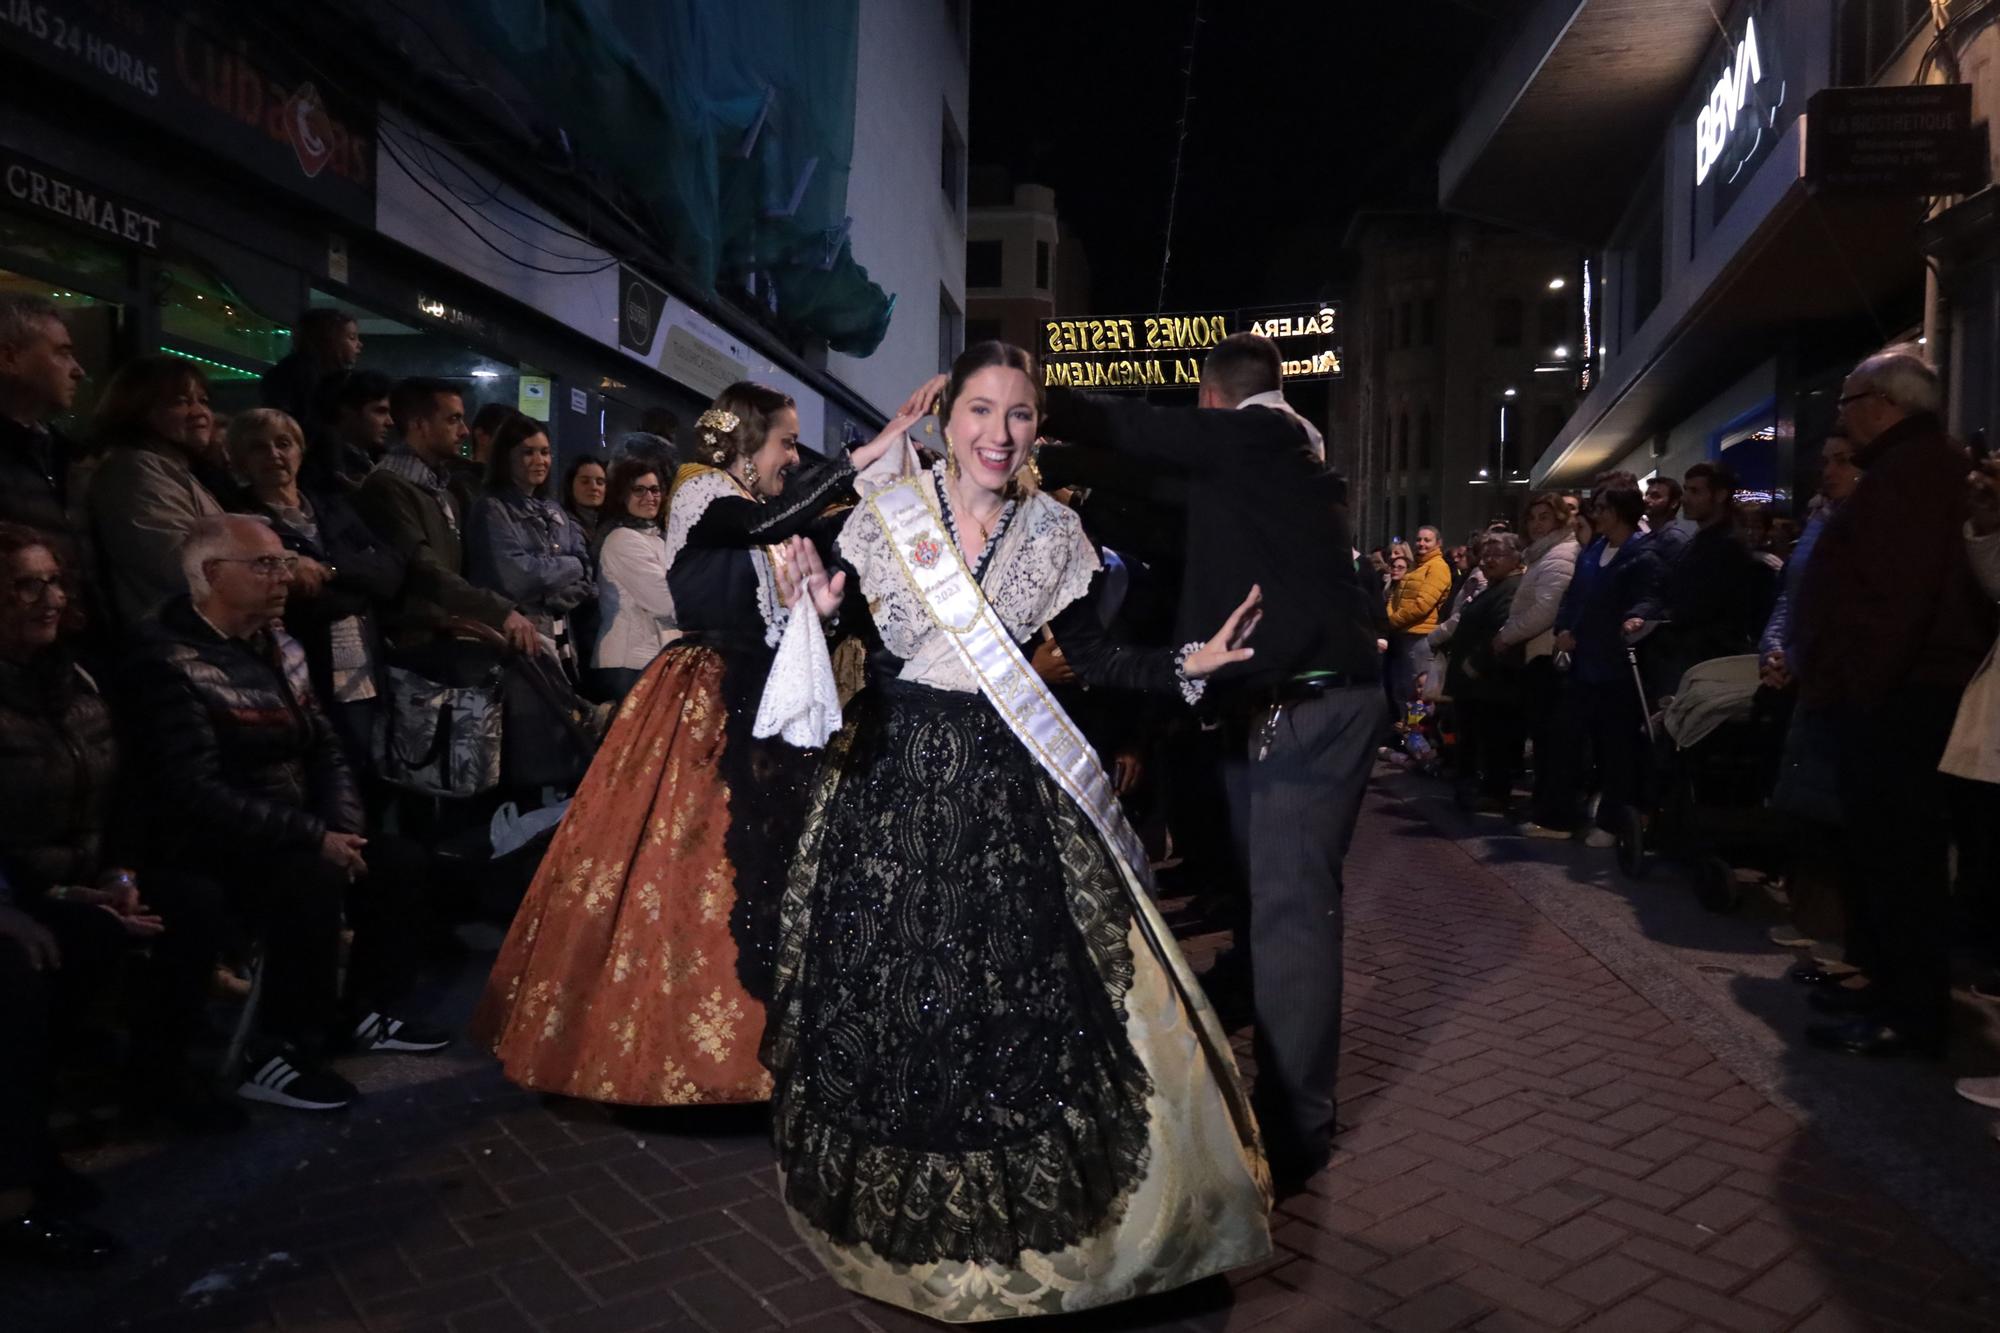 GALERÍA | Desfile de final de fiestas